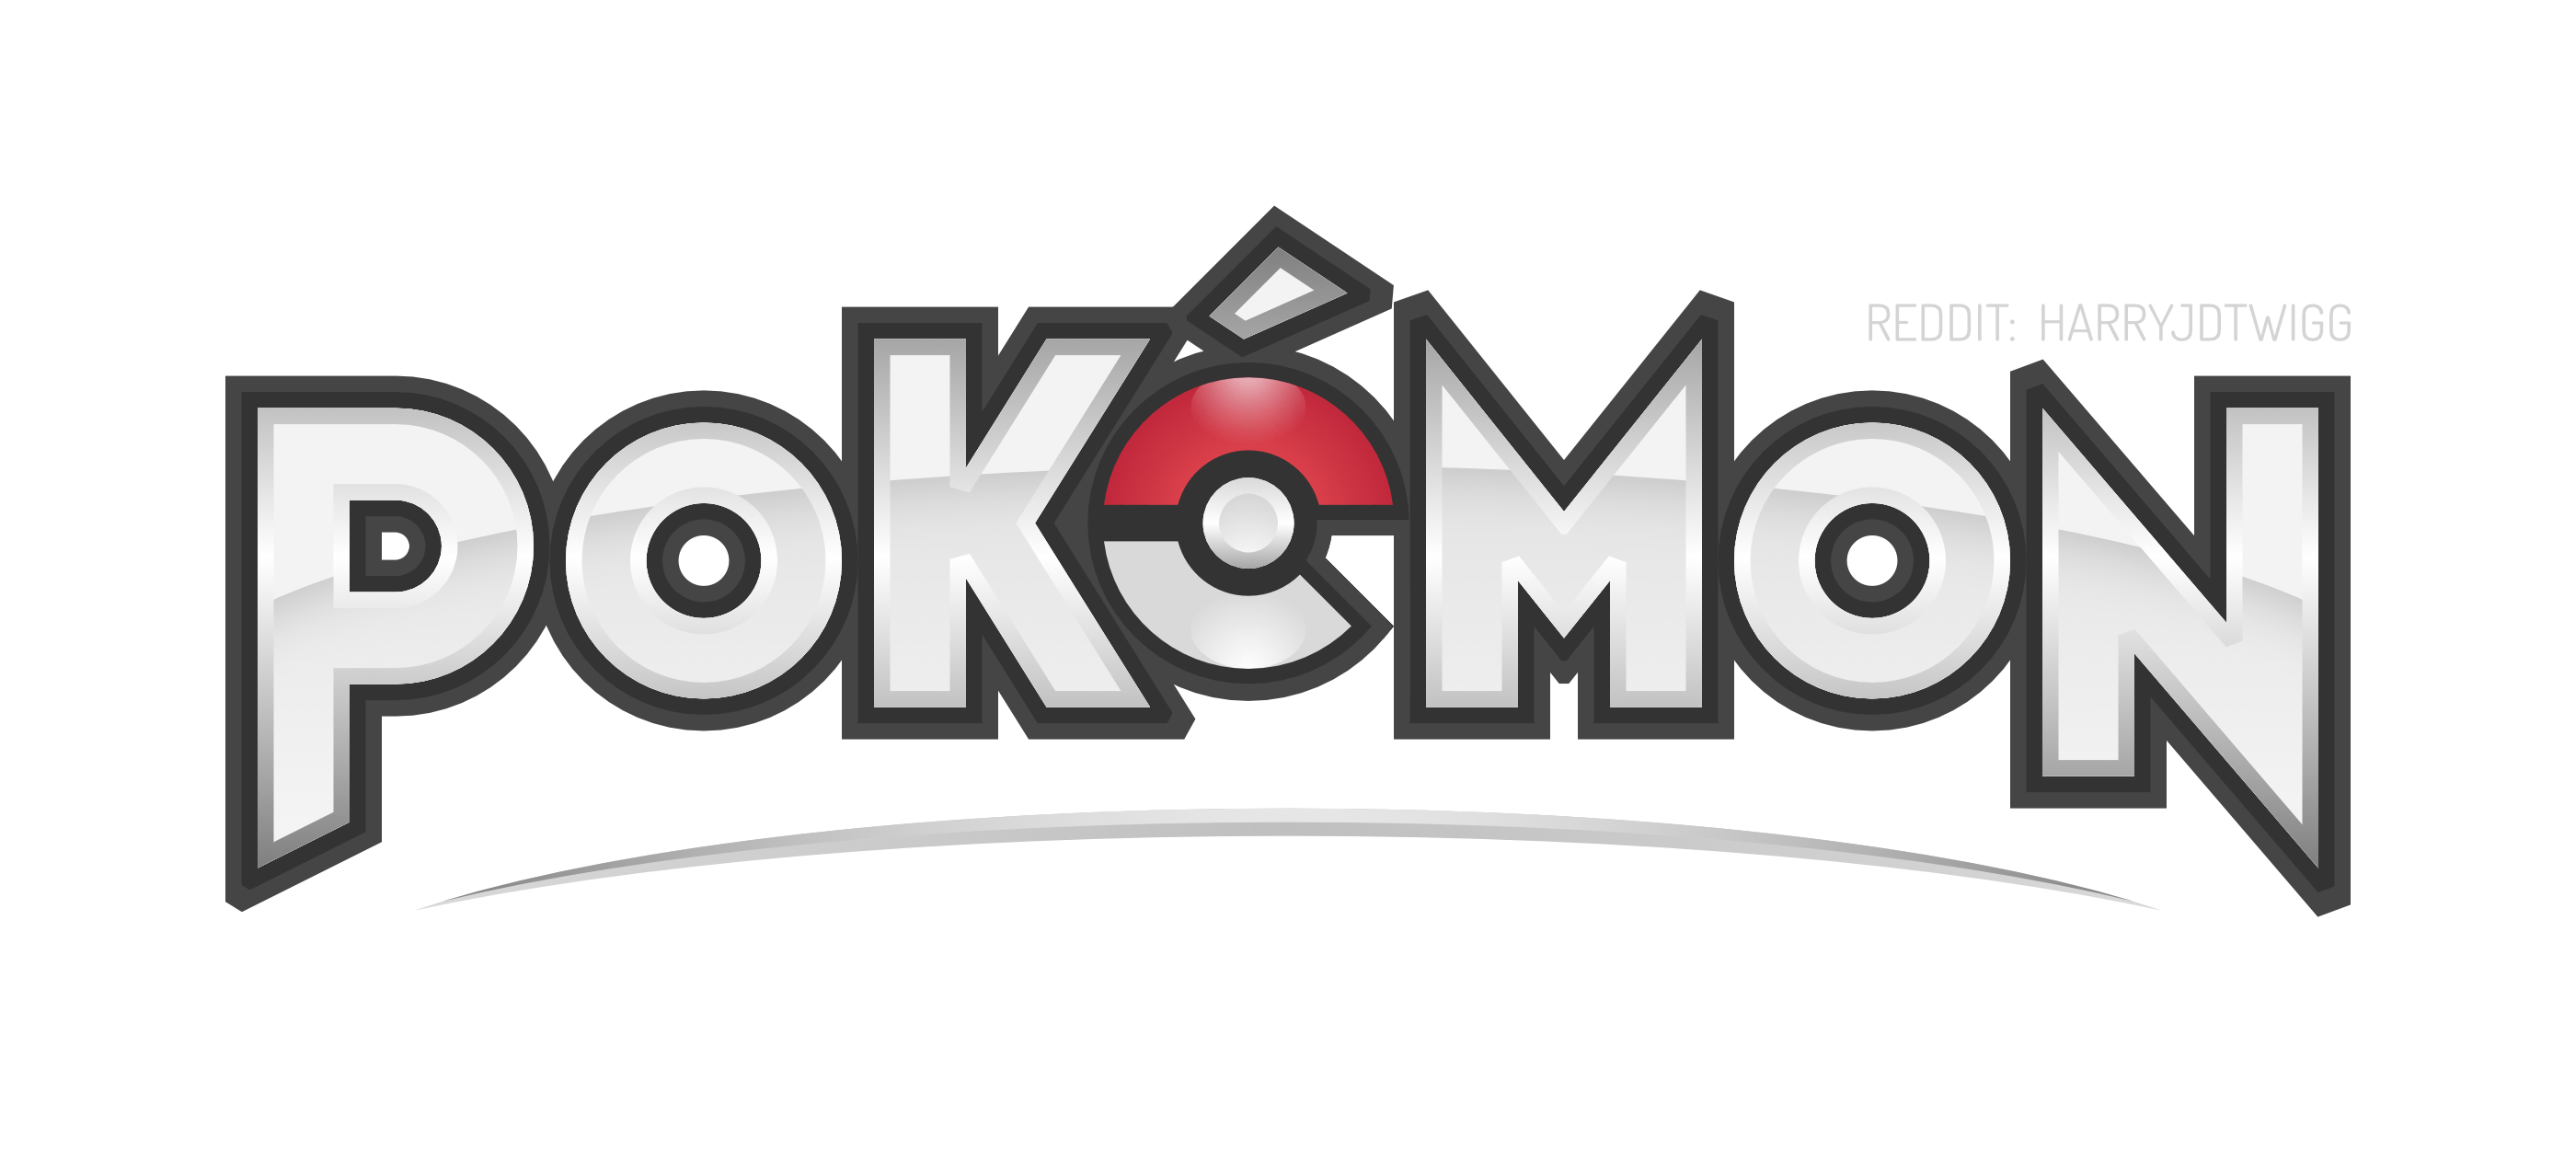 Pokeman Logo - My Pokémon Logo | Fanmade Redesign - Album on Imgur